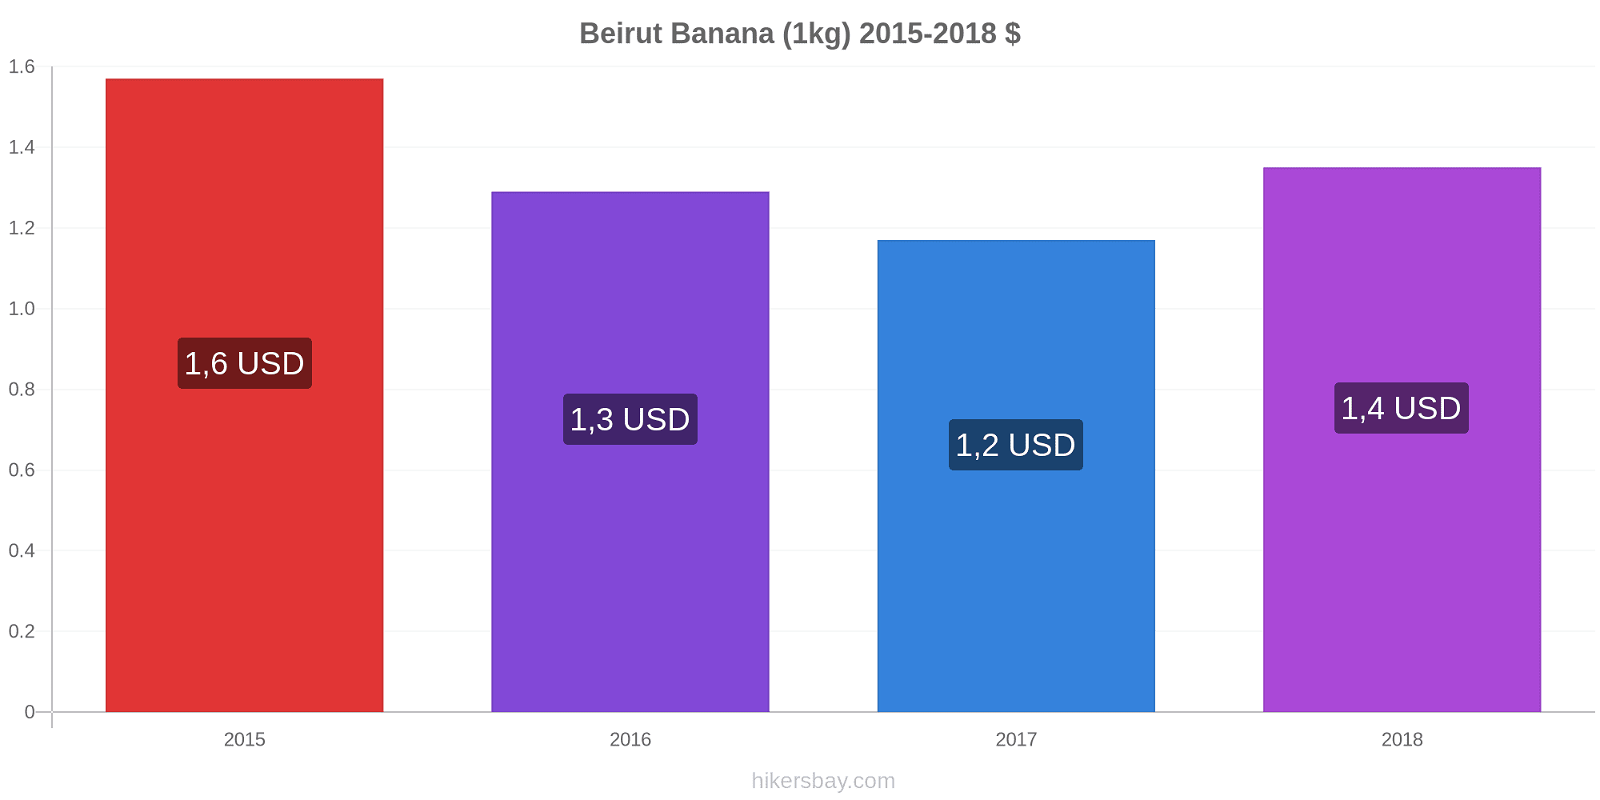 Beirut modificări de preț Banana (1kg) hikersbay.com